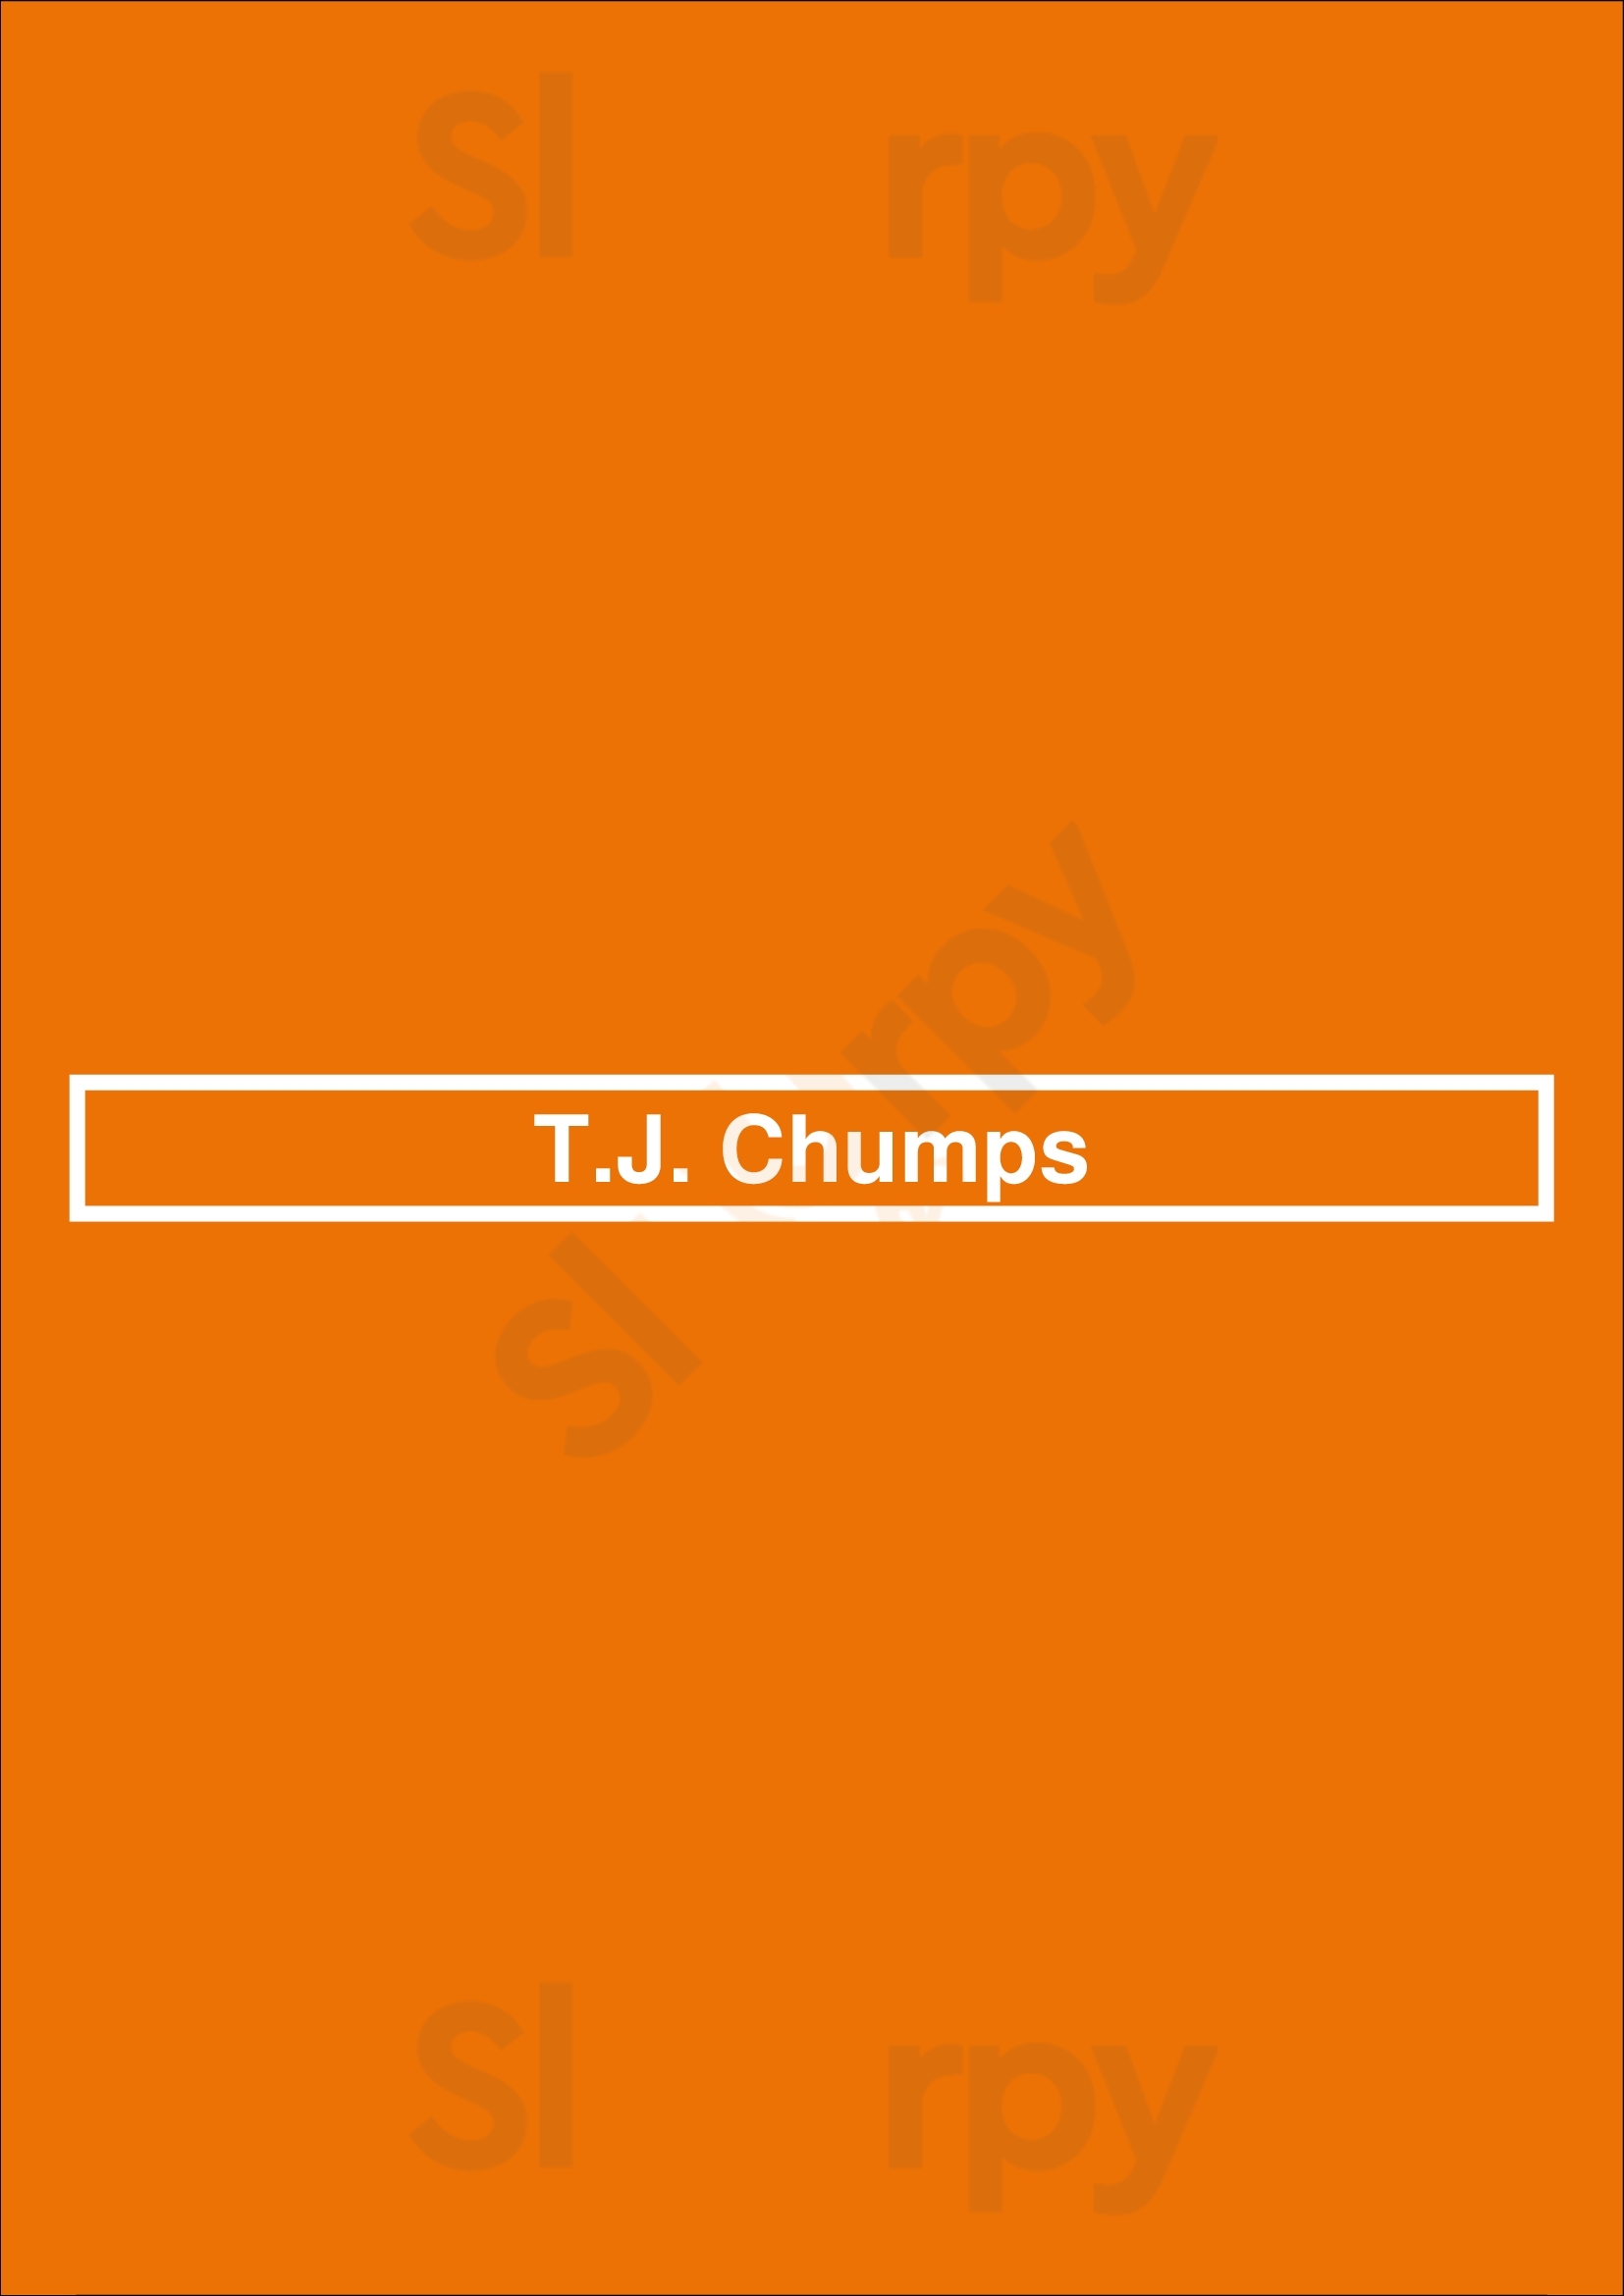 T.j. Chumps Miamisburg Menu - 1